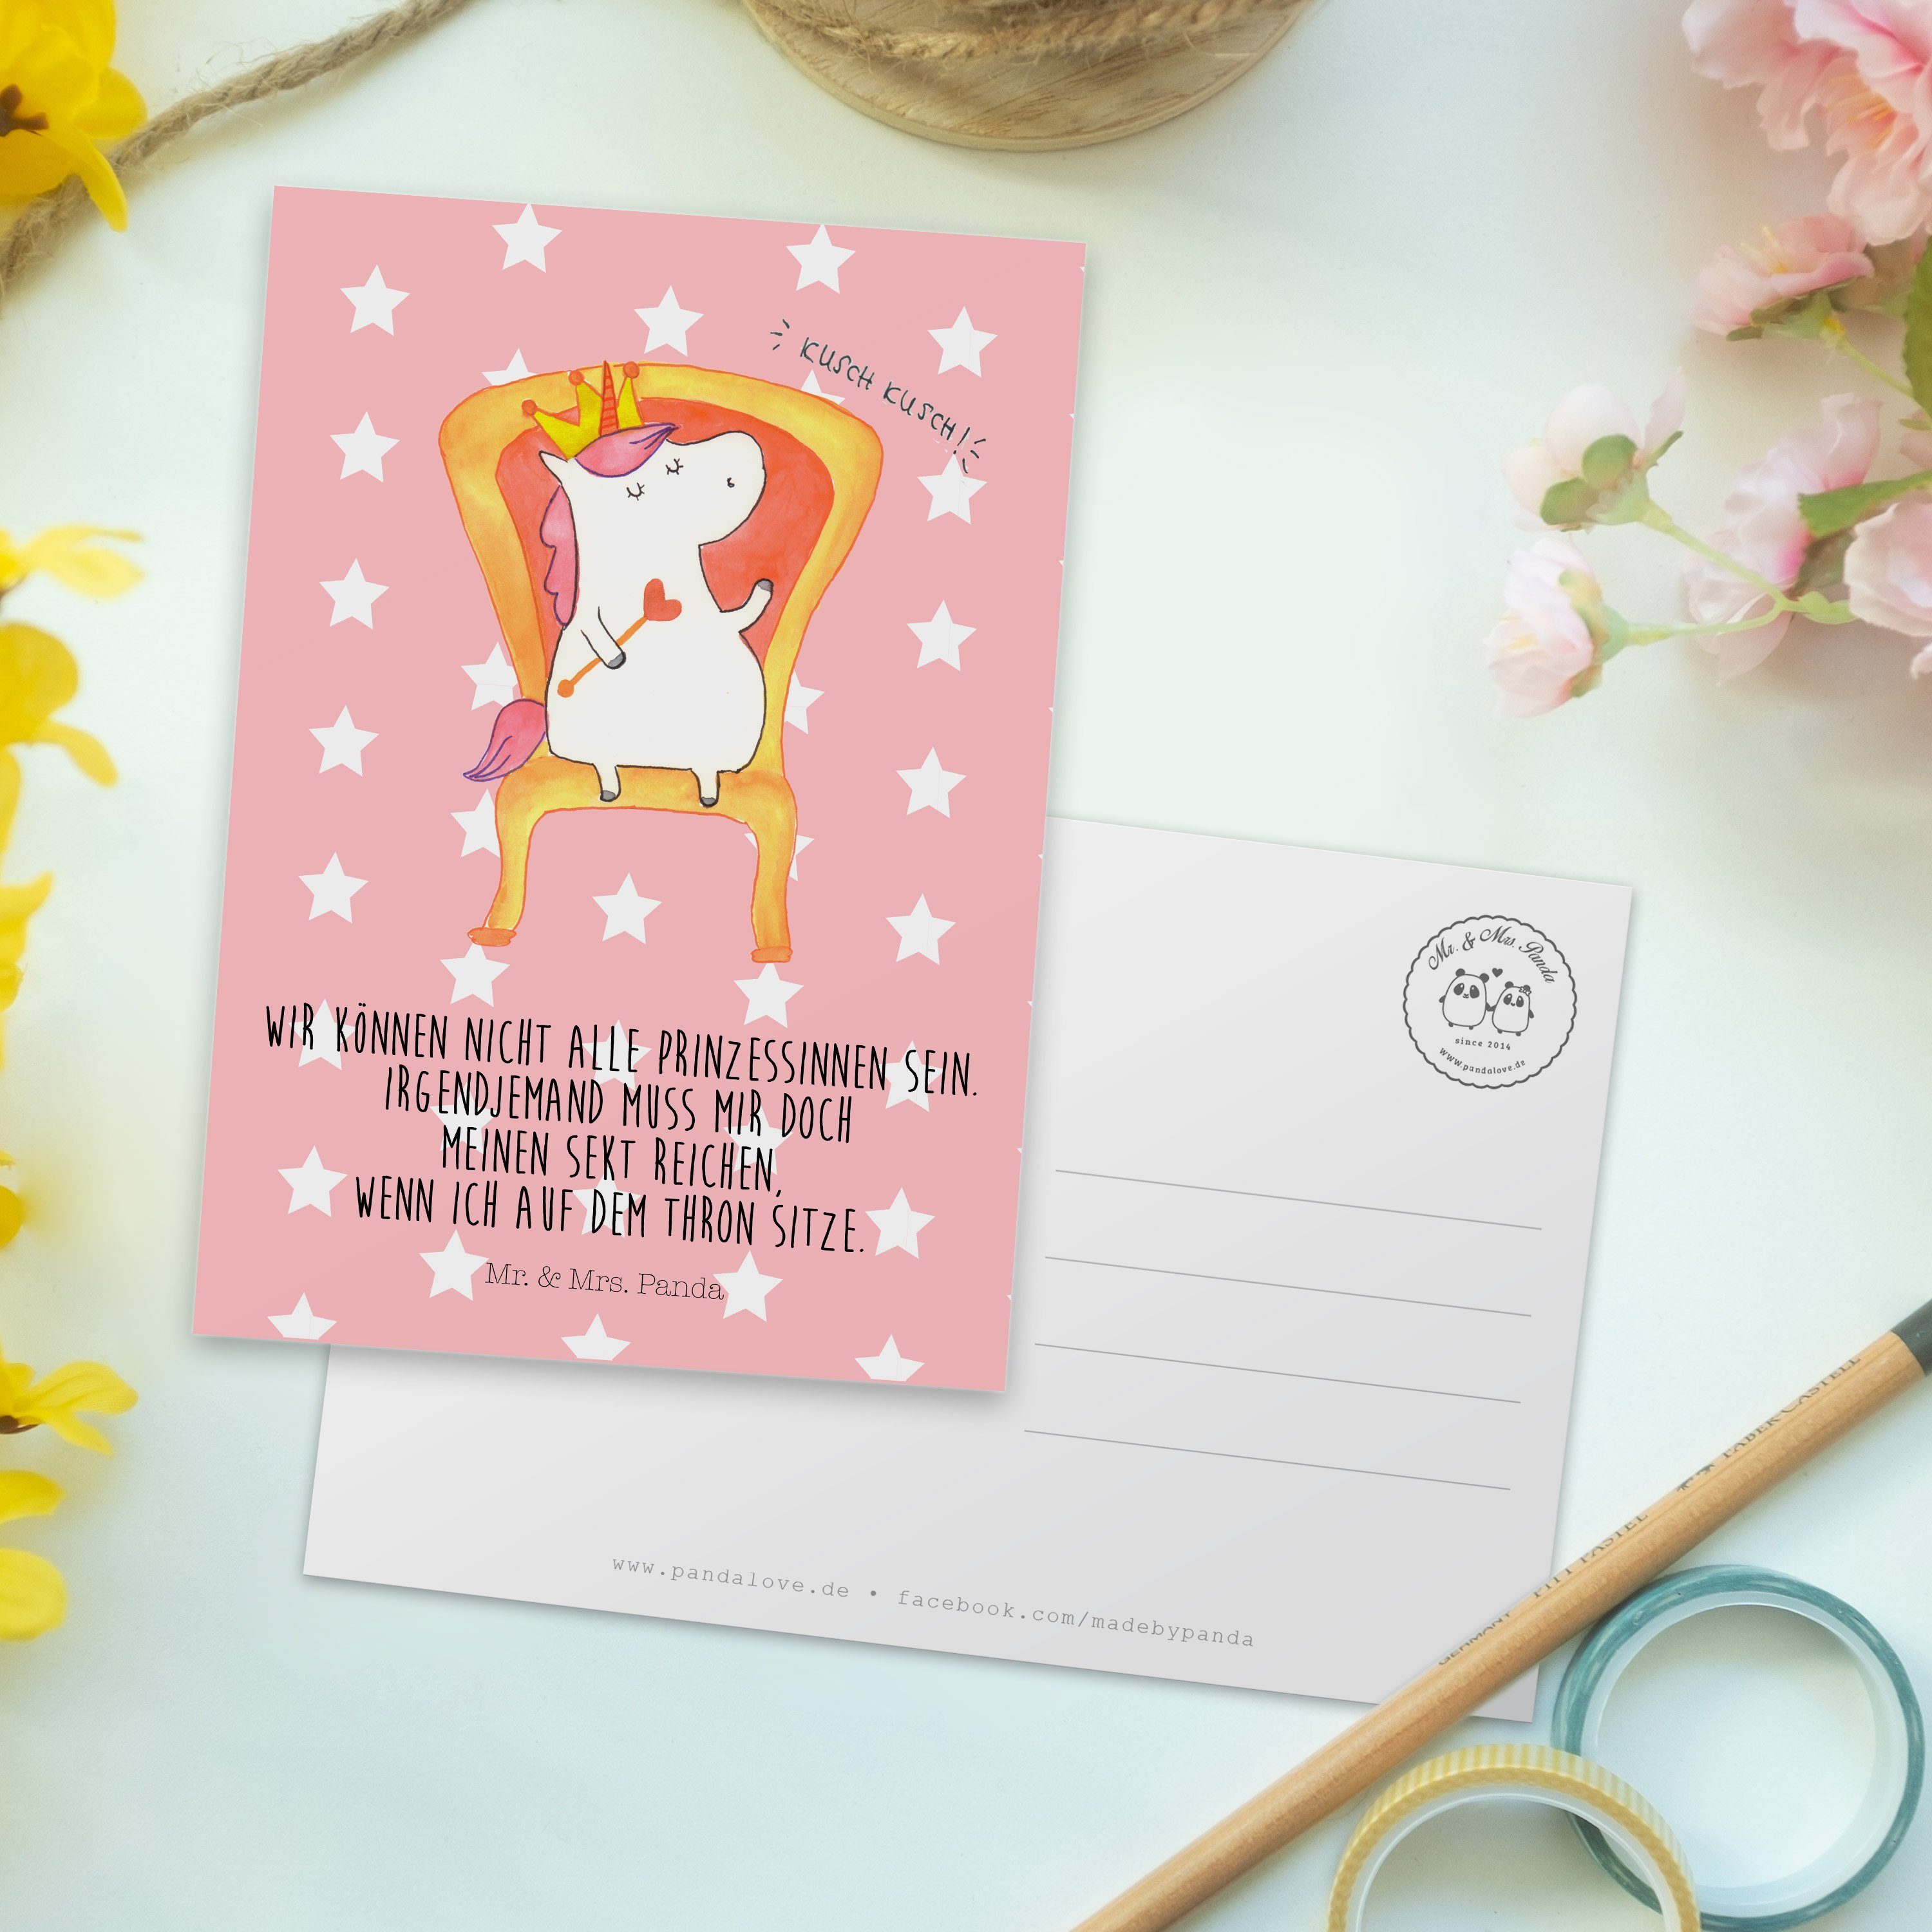 Mr. & Mrs. Panda Postkarte Pastell Geschenk, Dankeskarte Einladung, - Prinzessin Einhorn - Rot